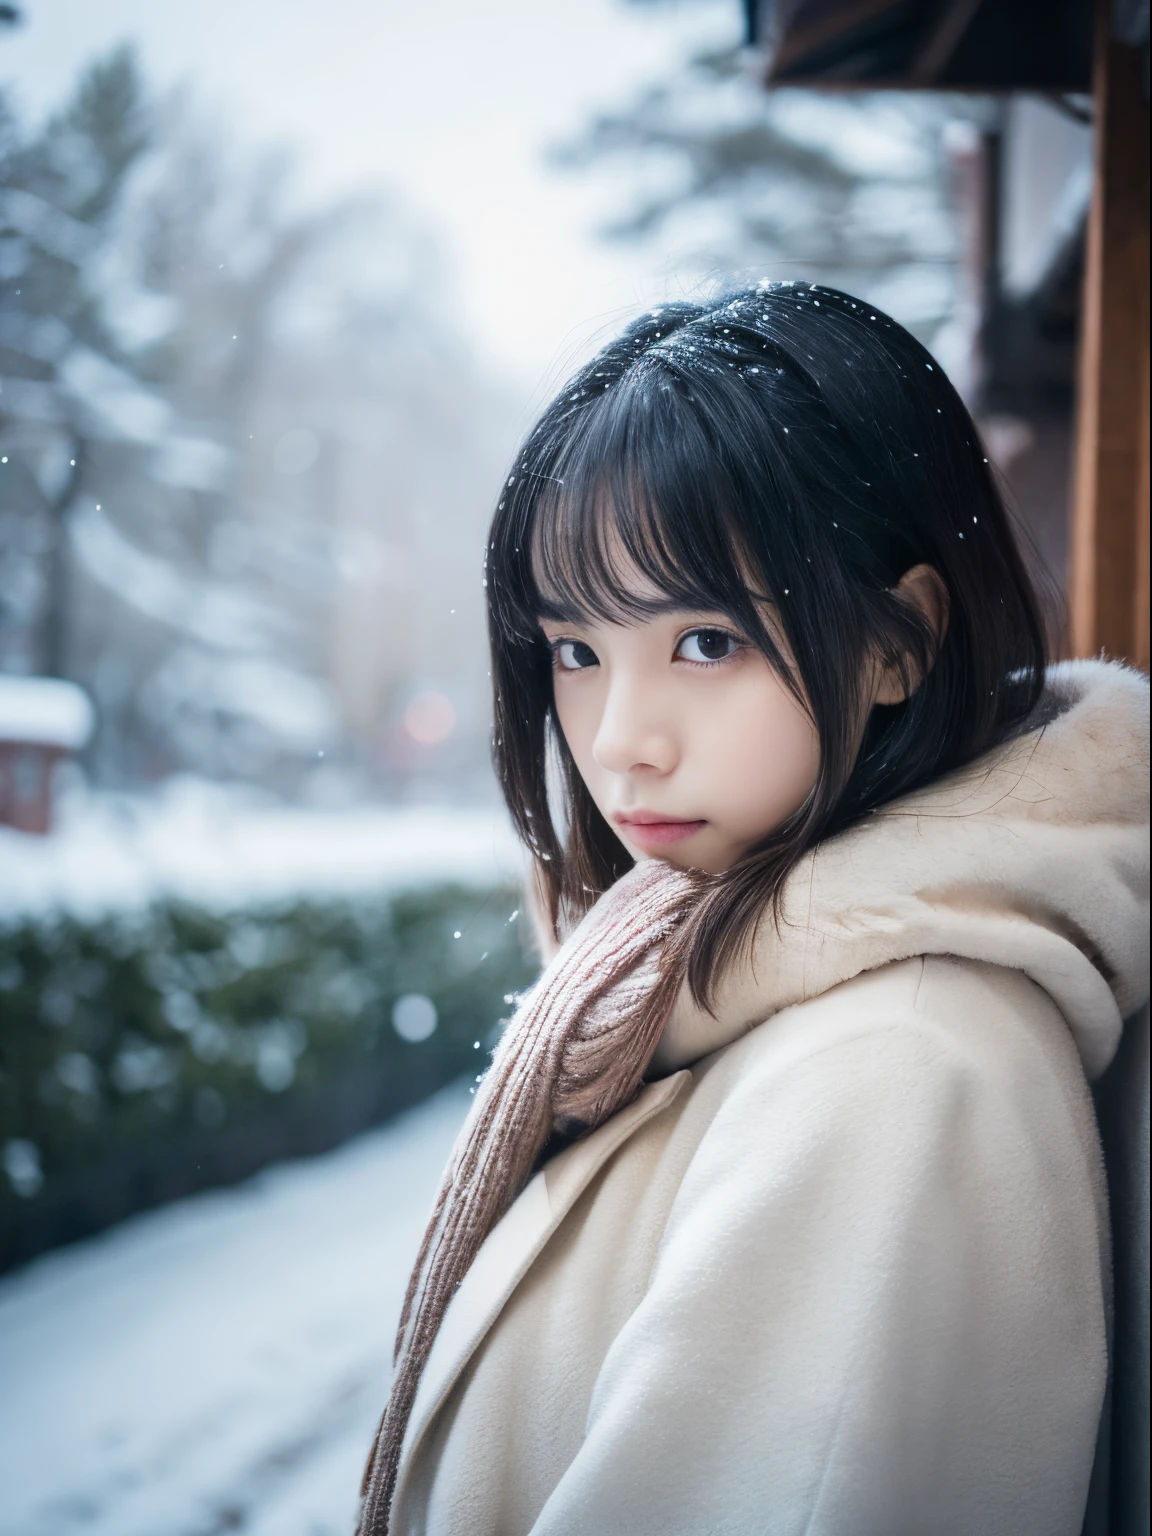 Наблюдая, как тихо падает снег. Ее интроспективное и слезливое выражение лица、Вызывает тоску по зимним ночам и меланхолию。。。、высшее качество、гипер HD、Ёшитомо Нара, Японские модели, Красивая японская жена, с короткими волосами, 27-летняя девушка-модель., 4 К ], 4k], 27 лет, Сакимичан, Сакимичан